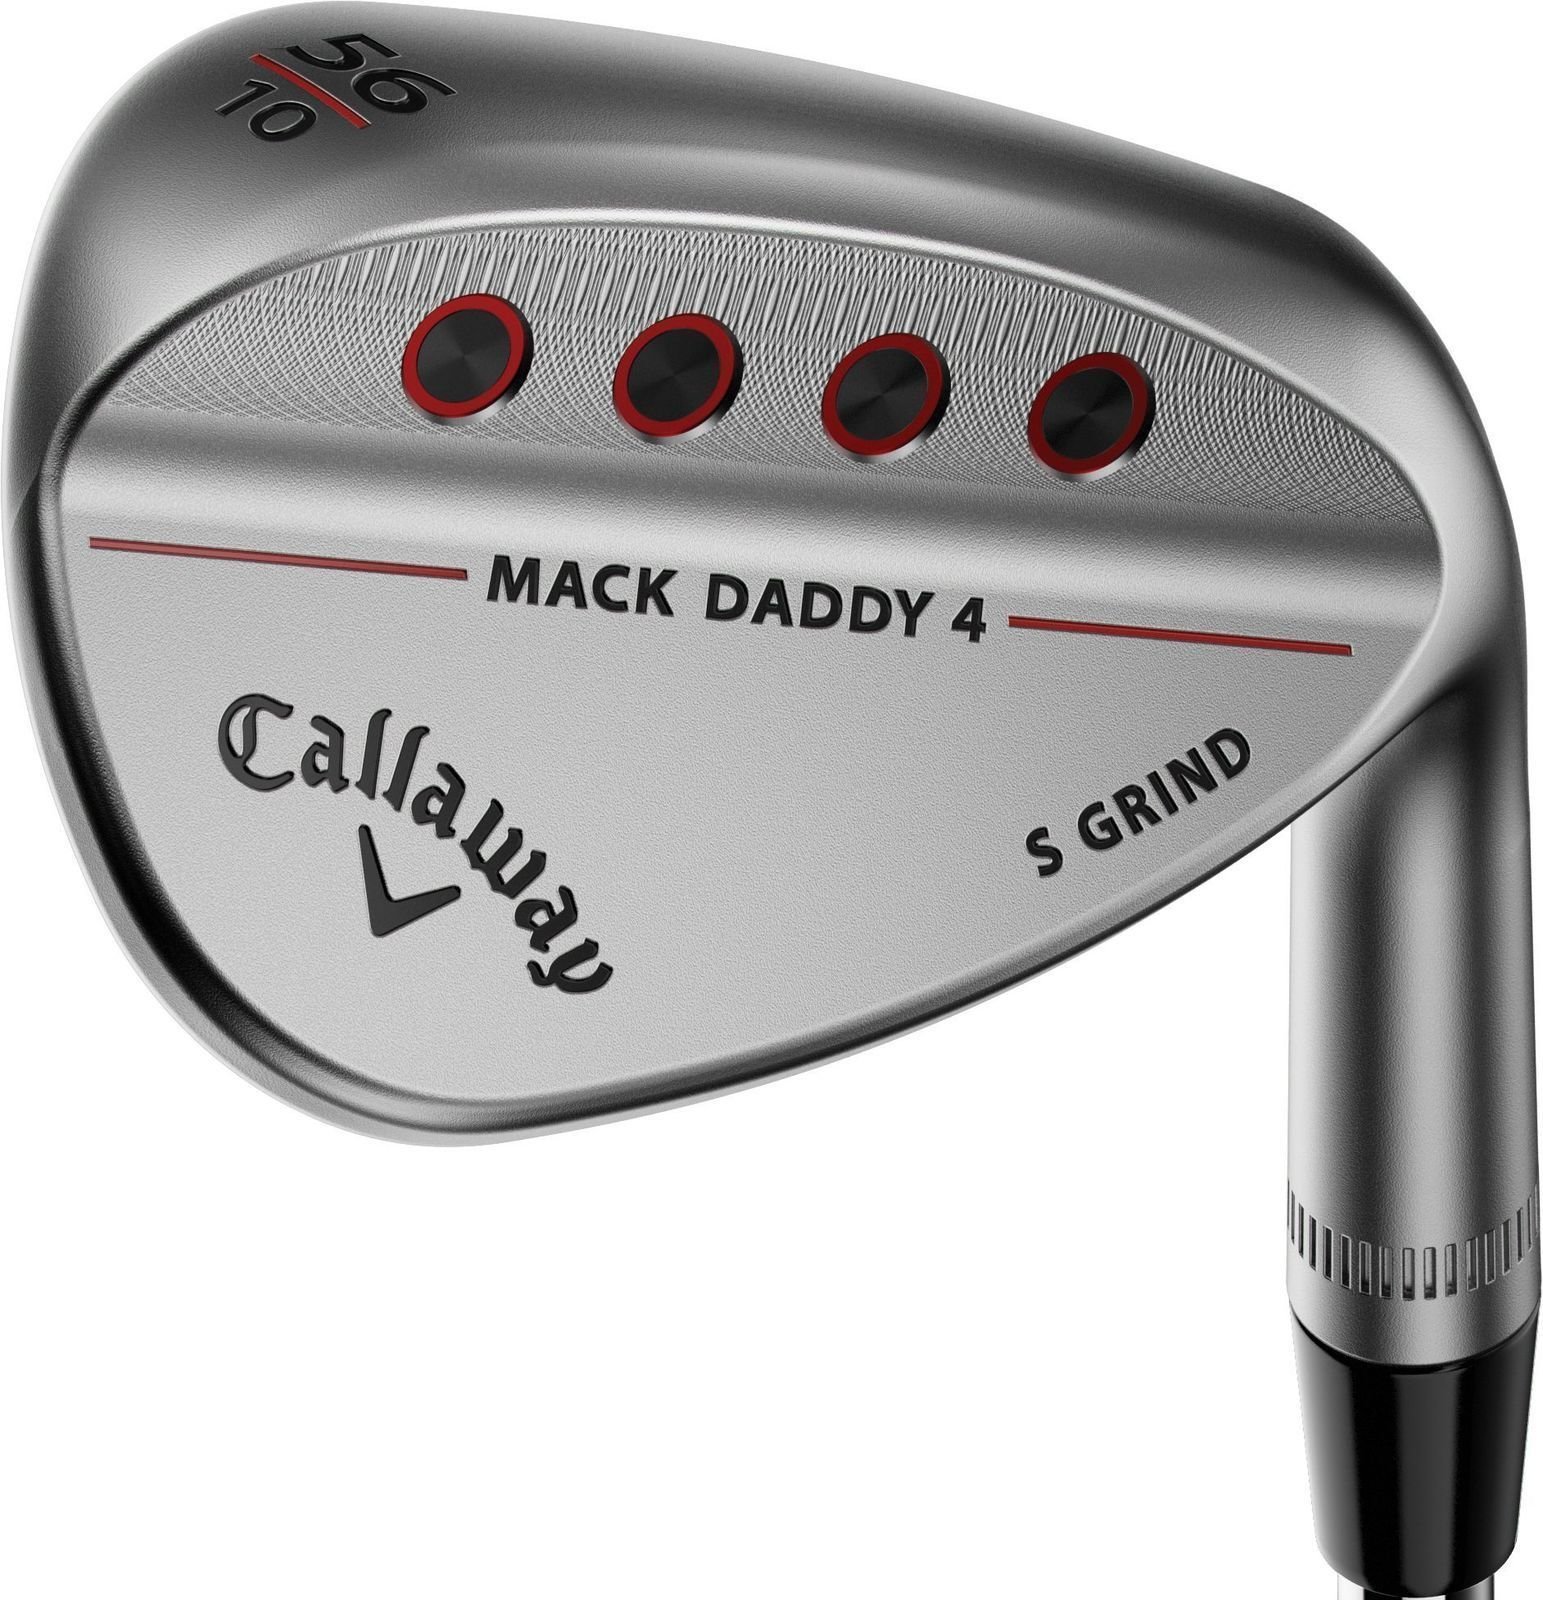 Λέσχες γκολφ - wedge Callaway Mack Daddy 4 Chrome Wedge 54-10 S-Grind Right Hand